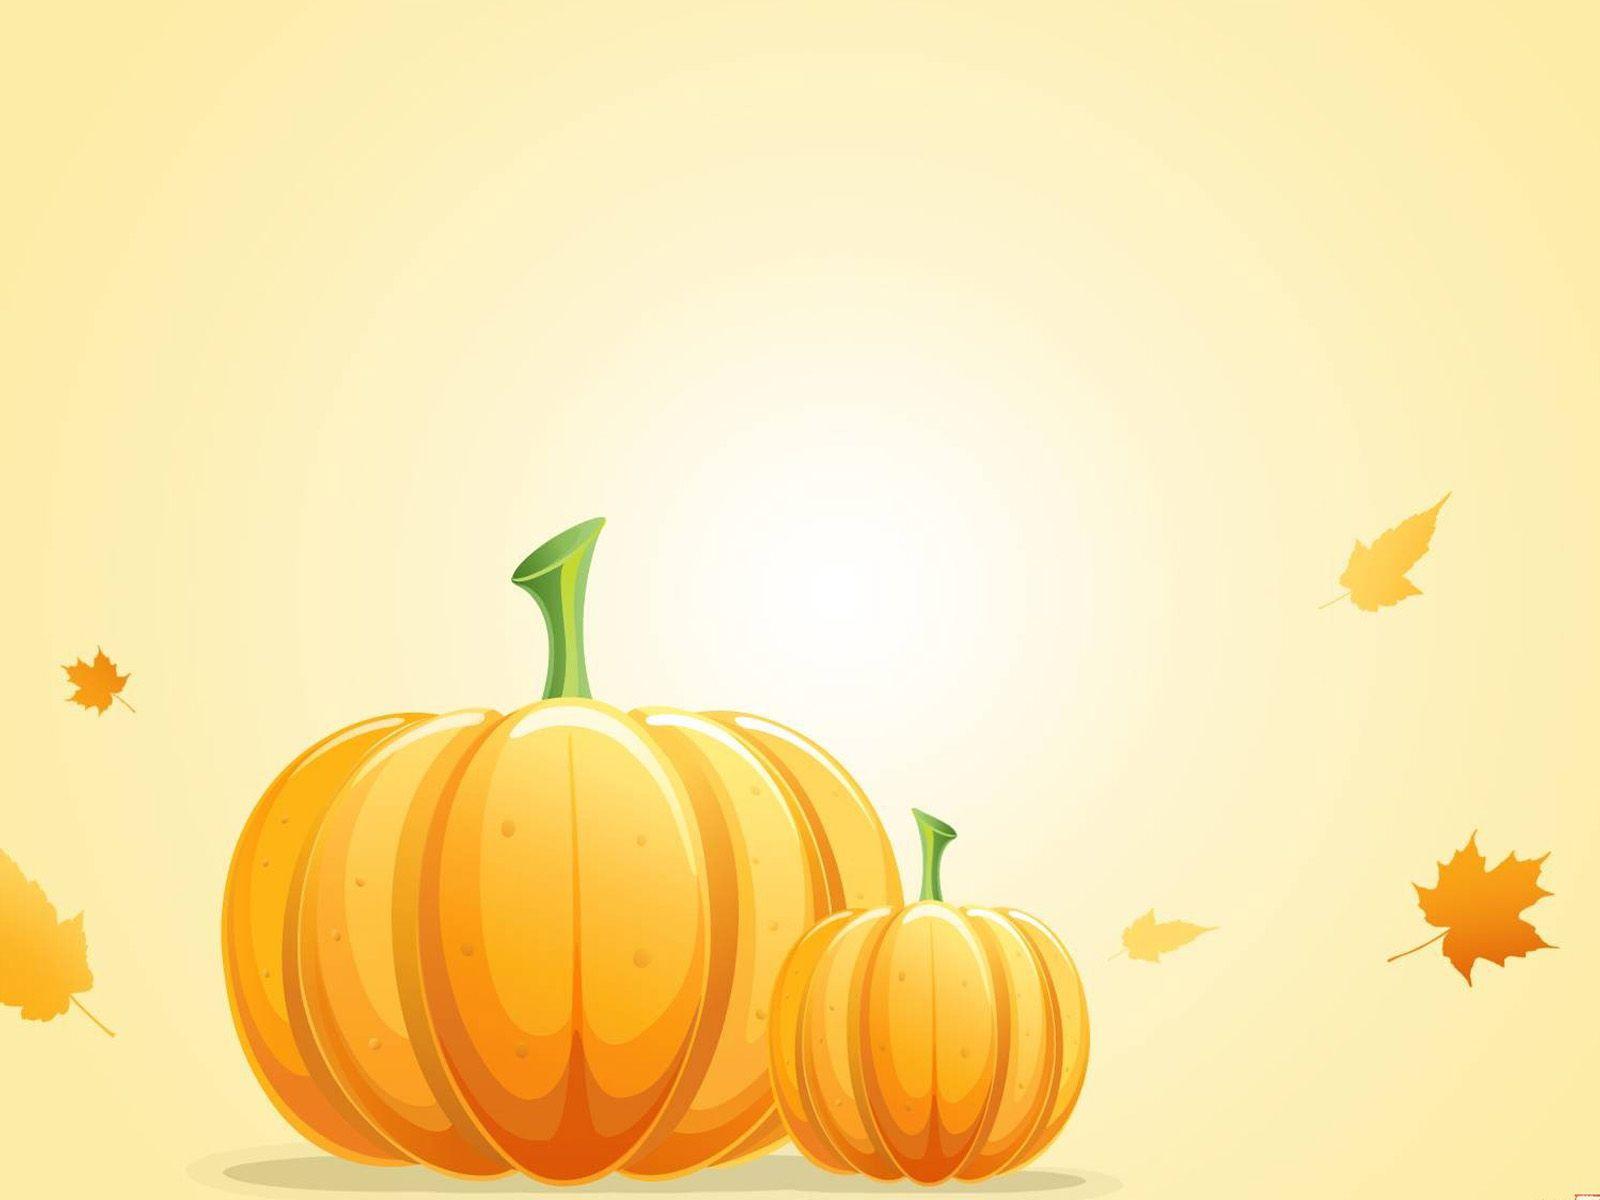 Cartoon Pumpkin Wallpapers - Top Free Cartoon Pumpkin Backgrounds ...